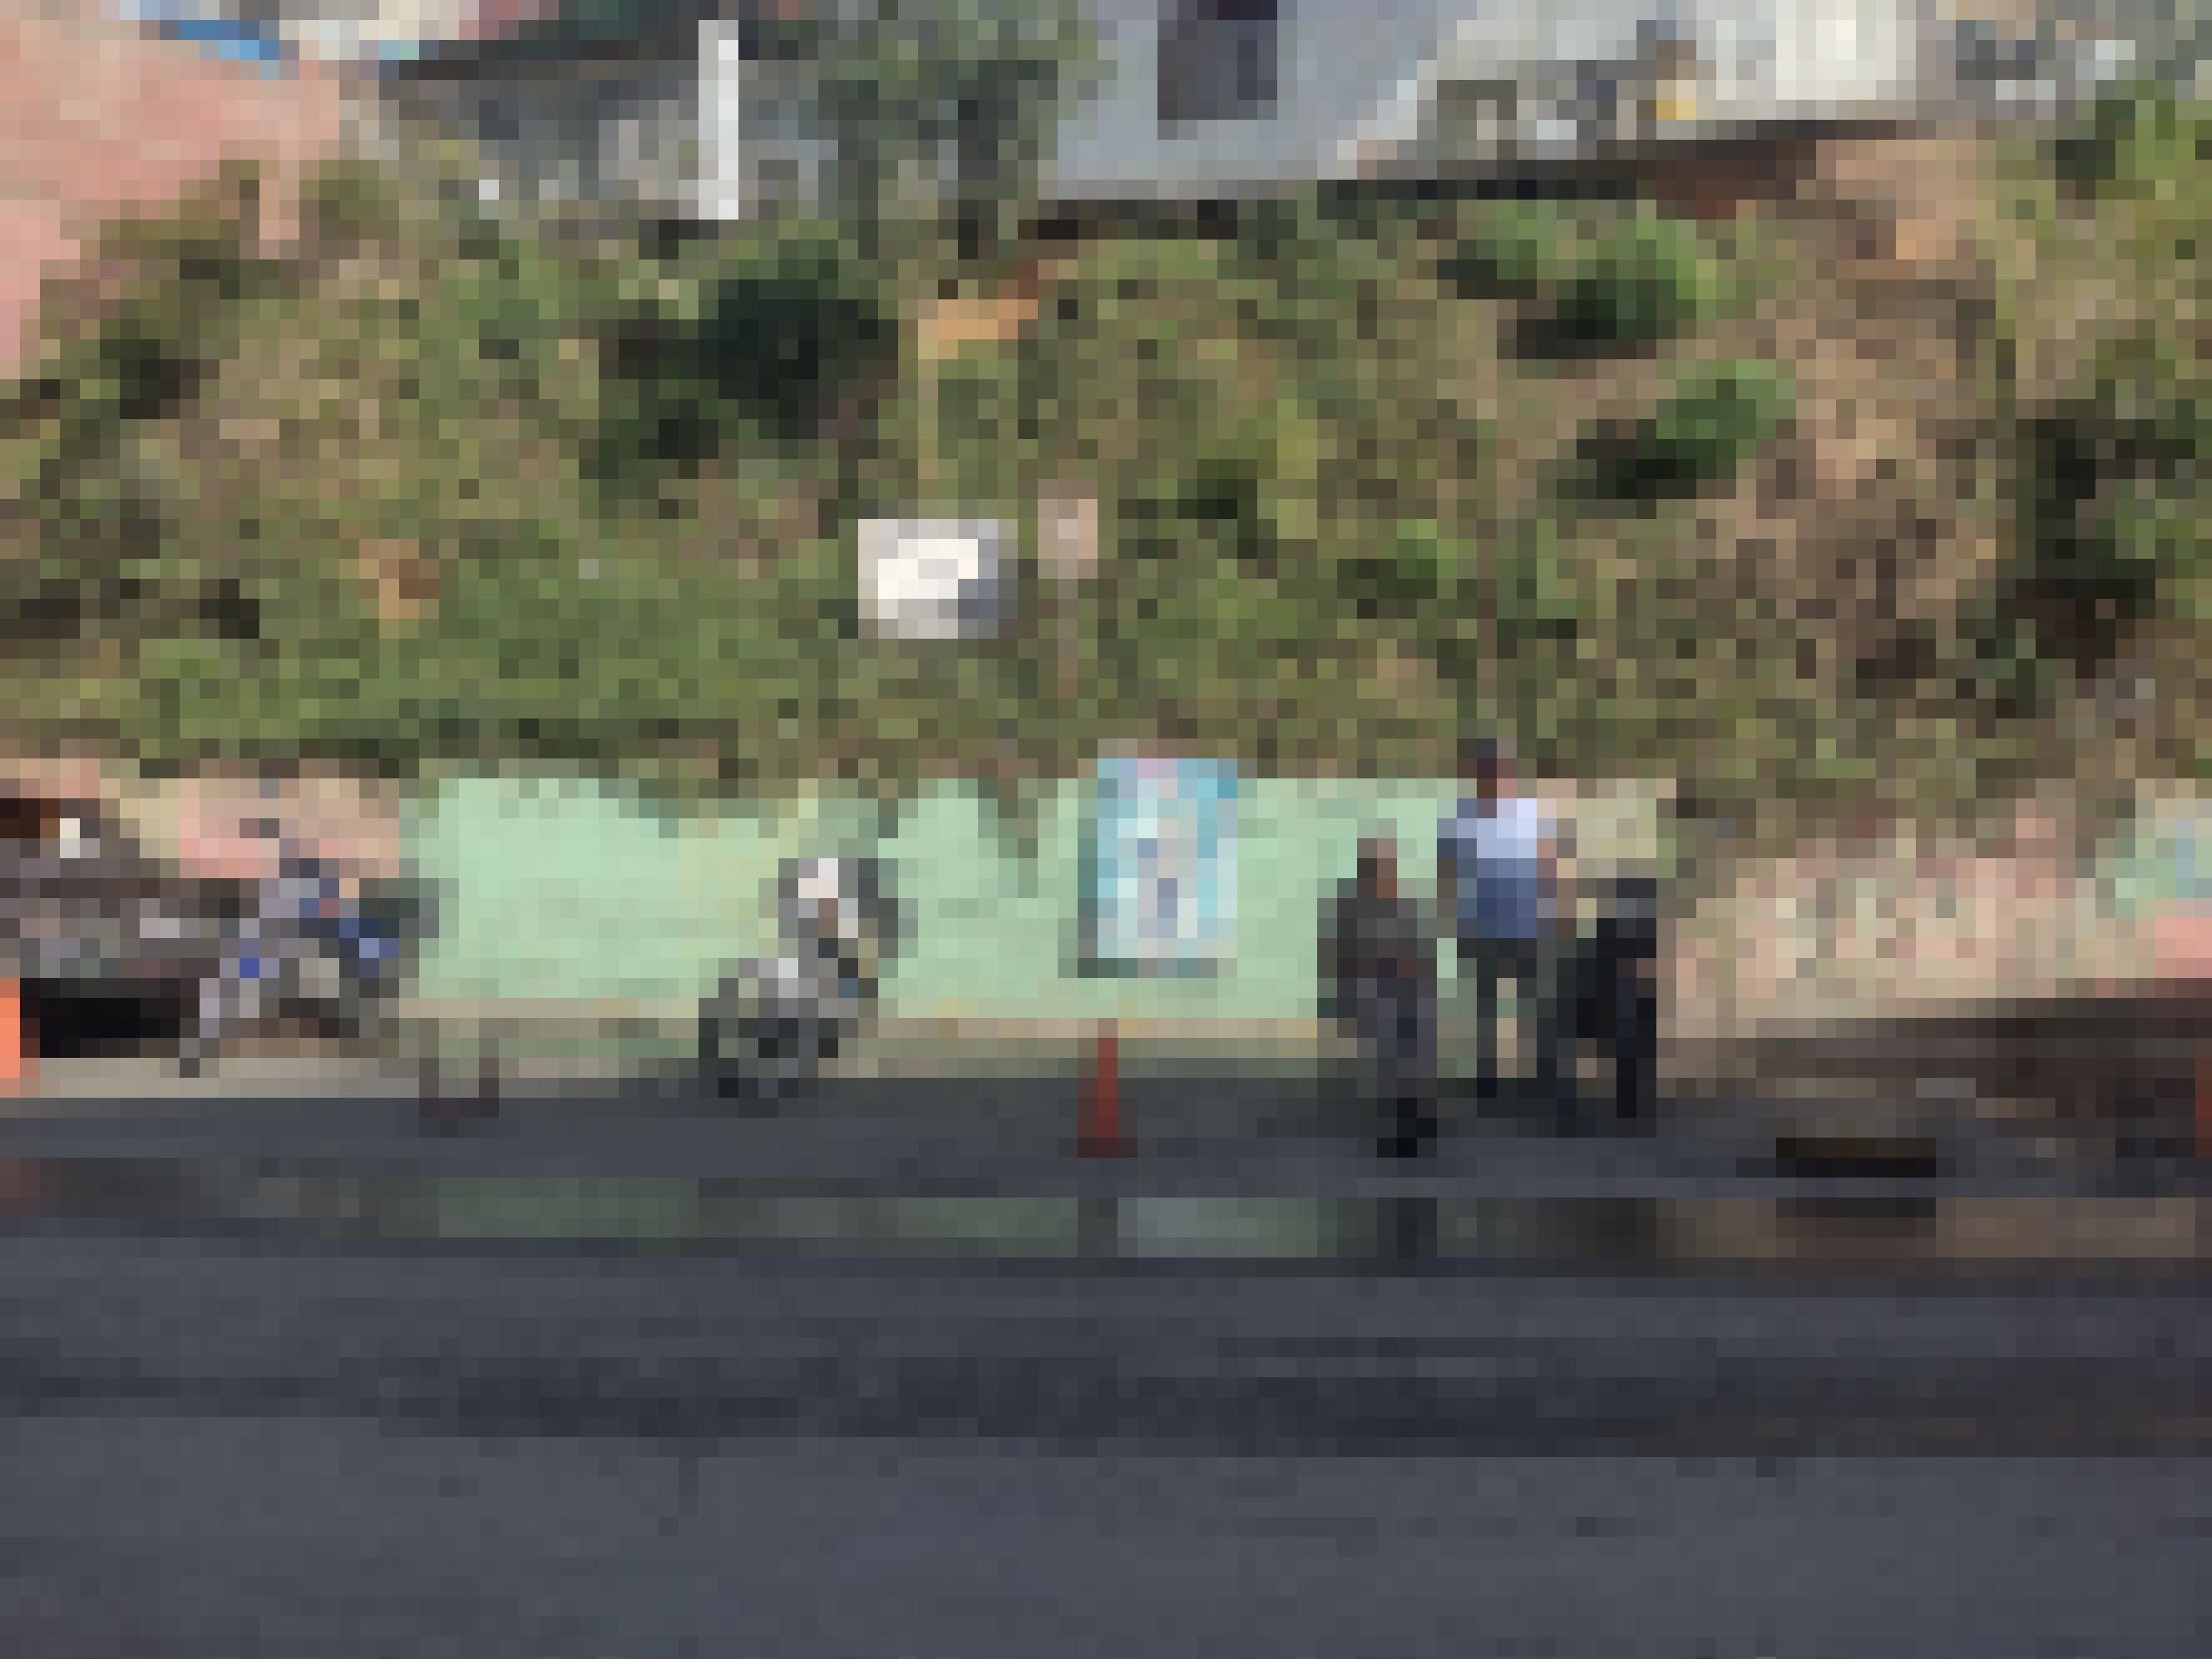 Zwei Motorräder sind vor einer Wand geparkt, ein paar Meter daneben stehen drei Männer, die Fahrer, die auf Kundschaft warten.